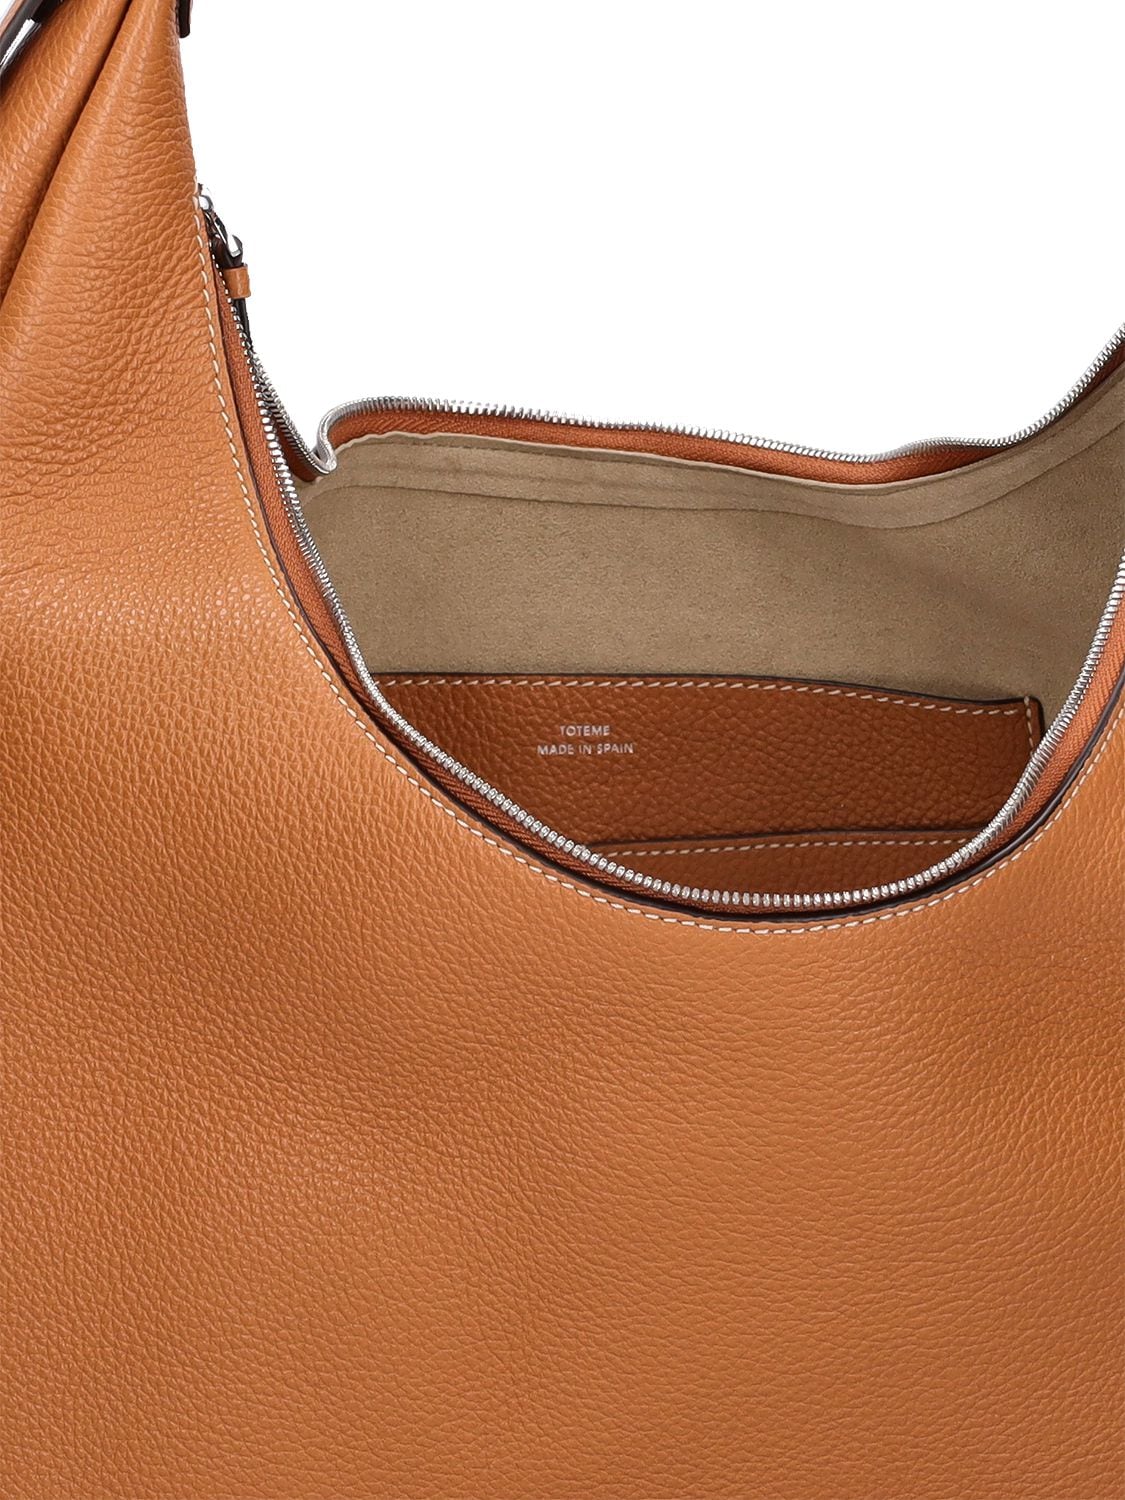 Shop Totême Belt Hobo Leather Shoulder Bag In Tan